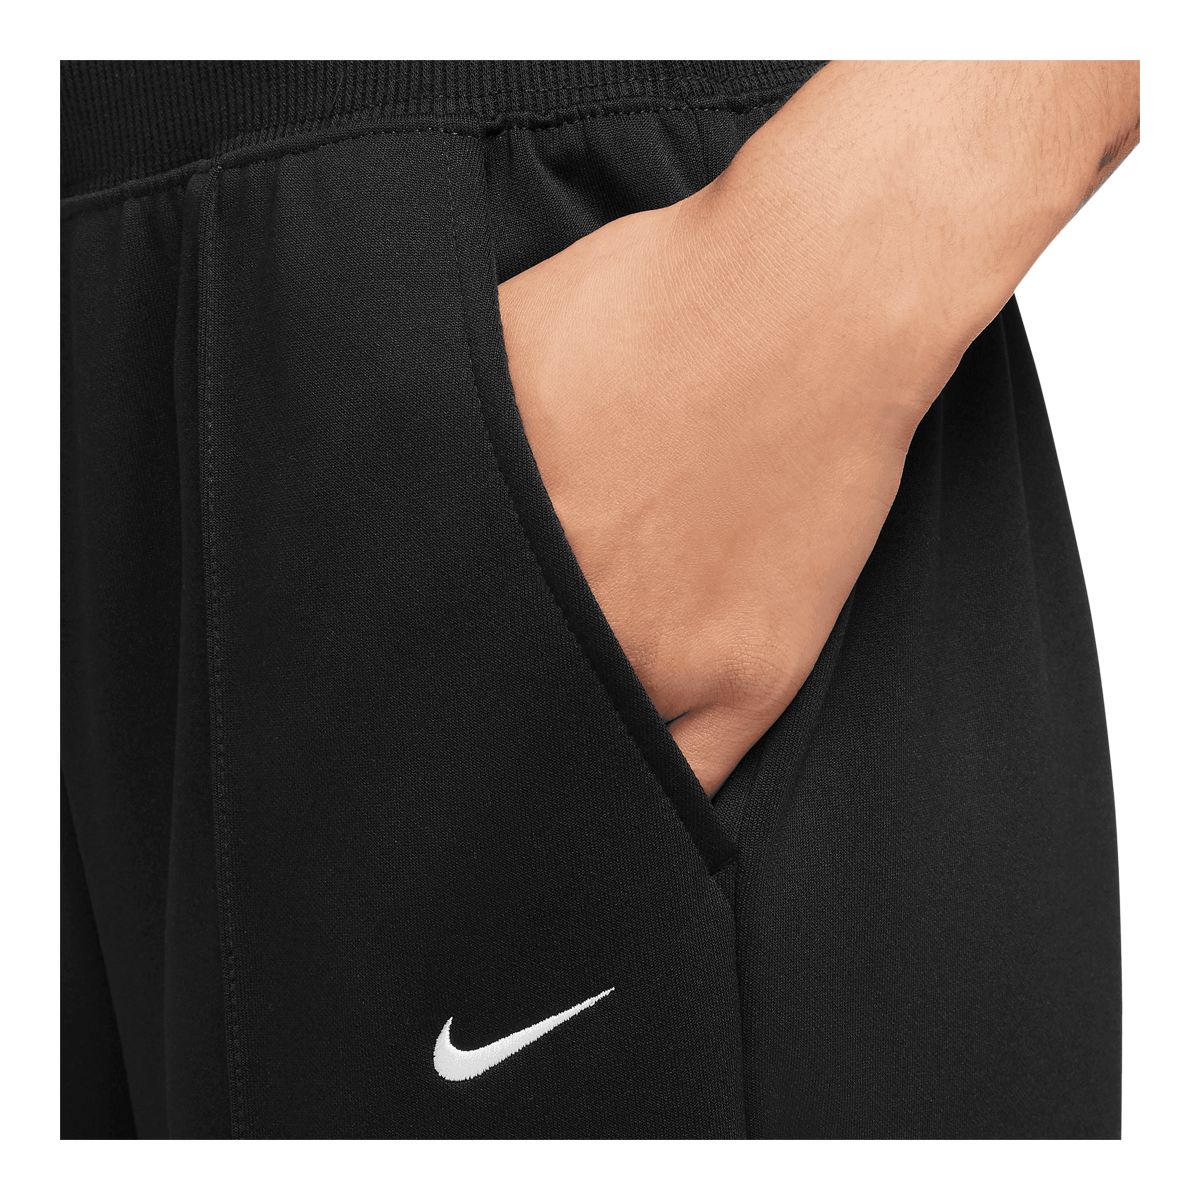 Nike Sportswear Knit Palazzo Pants  Palazzo pants, Nike pants, Sportswear